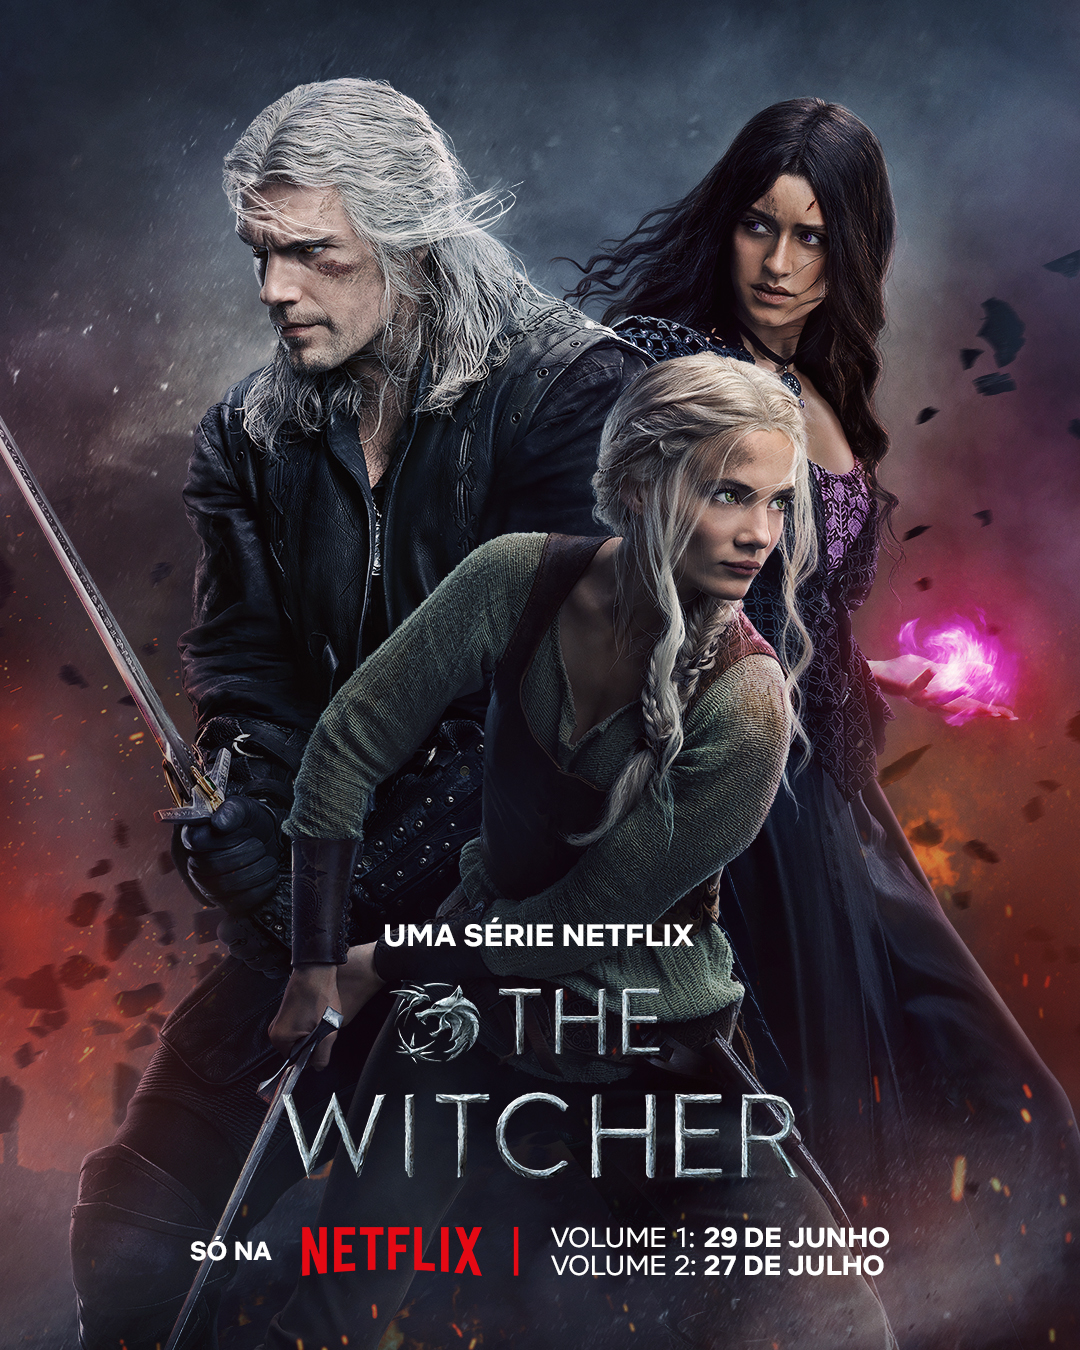 The Witcher | Netflix confirma data de lançamento da terceira temporada